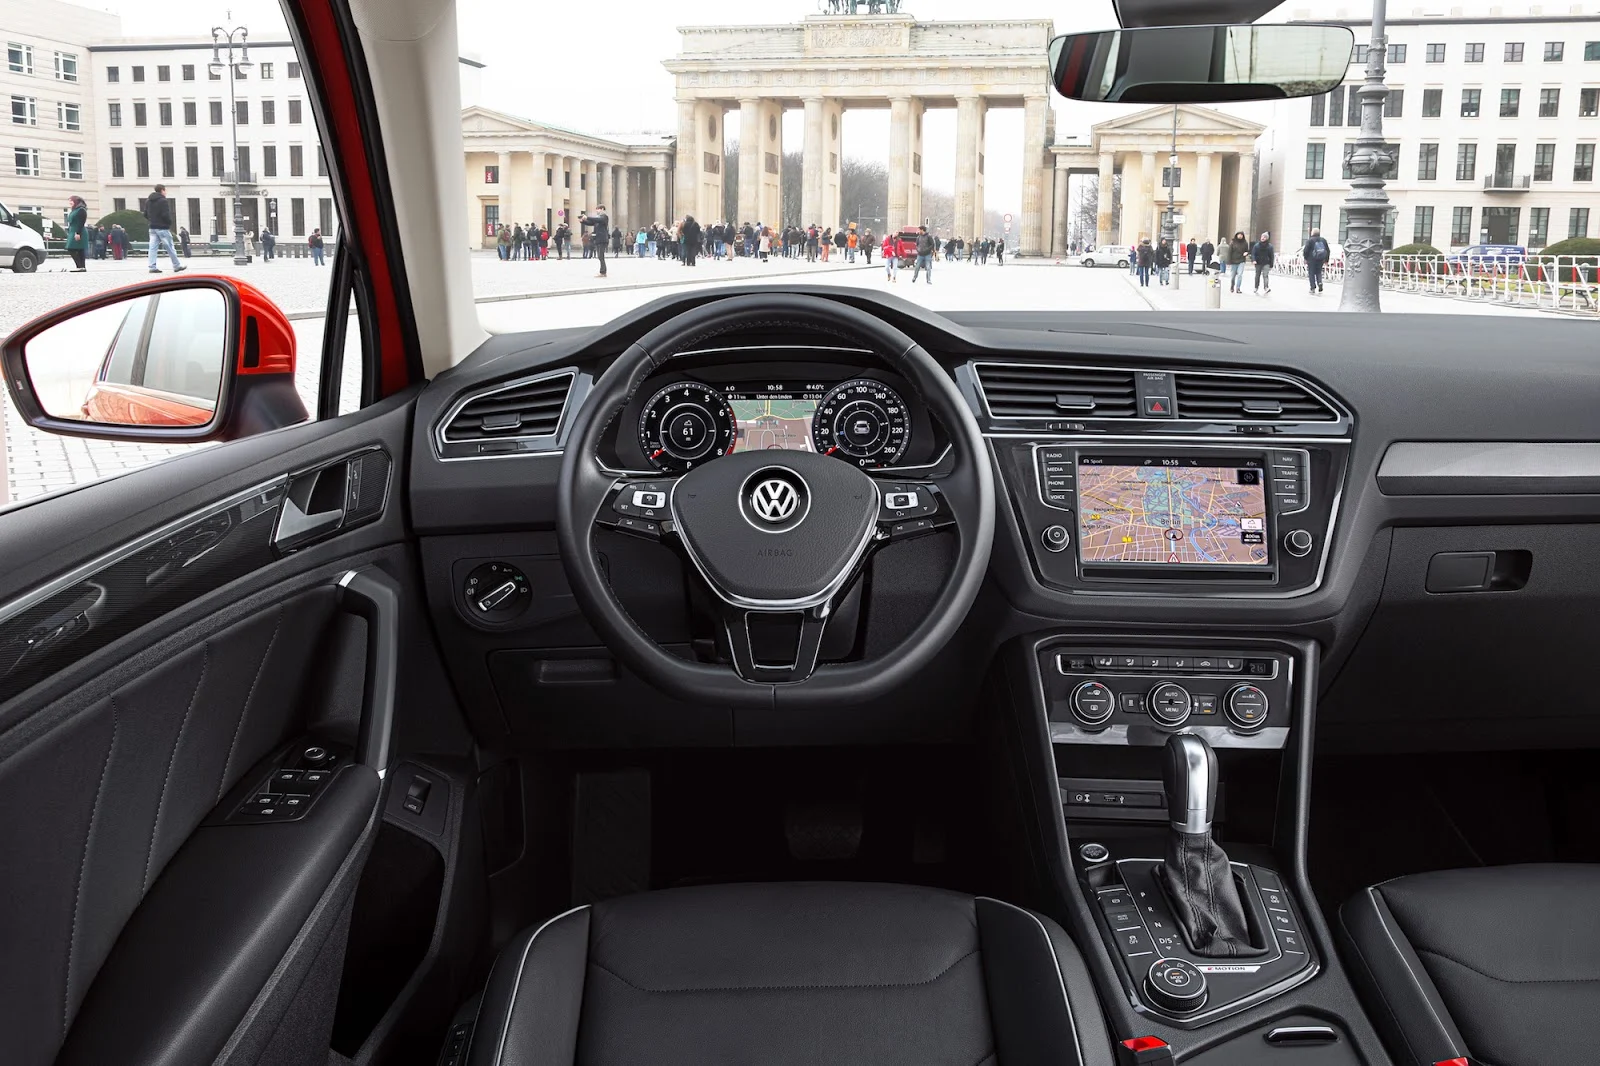 Khoang lái của Volkswagen Tiguan 2016 quá đẹp, logic và sang trọng